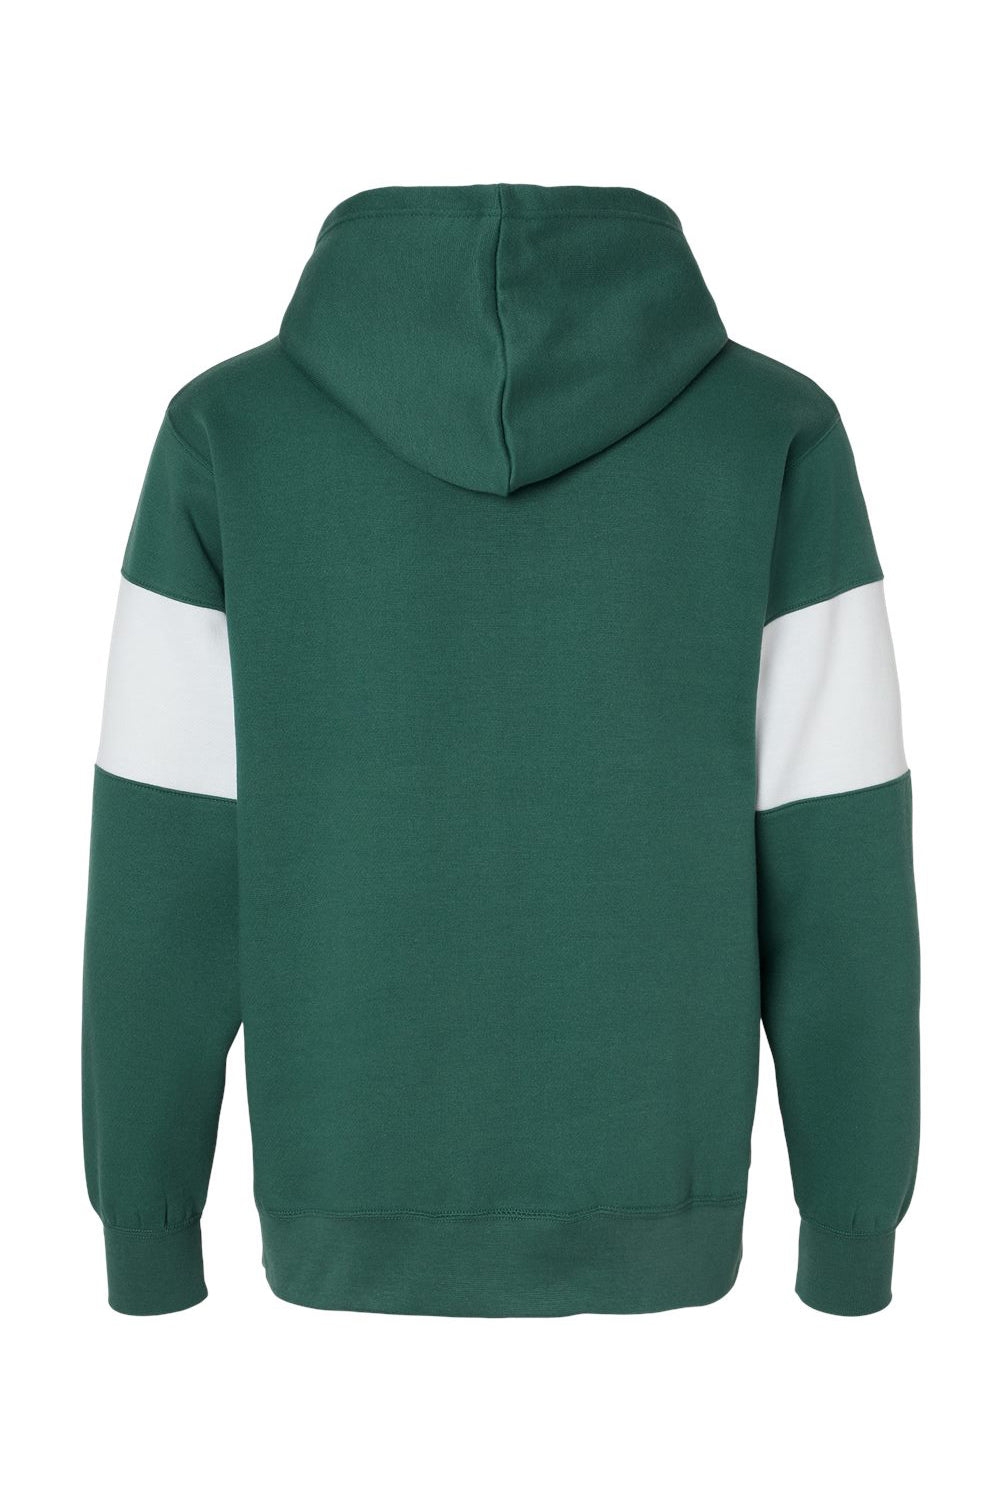 MV Sport 22709 Mens Classic Fleece Colorblocked Hooded Sweatshirt Hoodie Mallard Green Flat Back